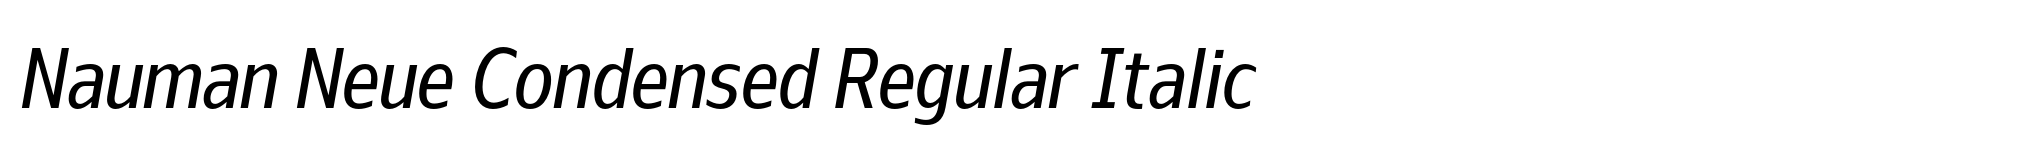 Nauman Neue Condensed Regular Italic image